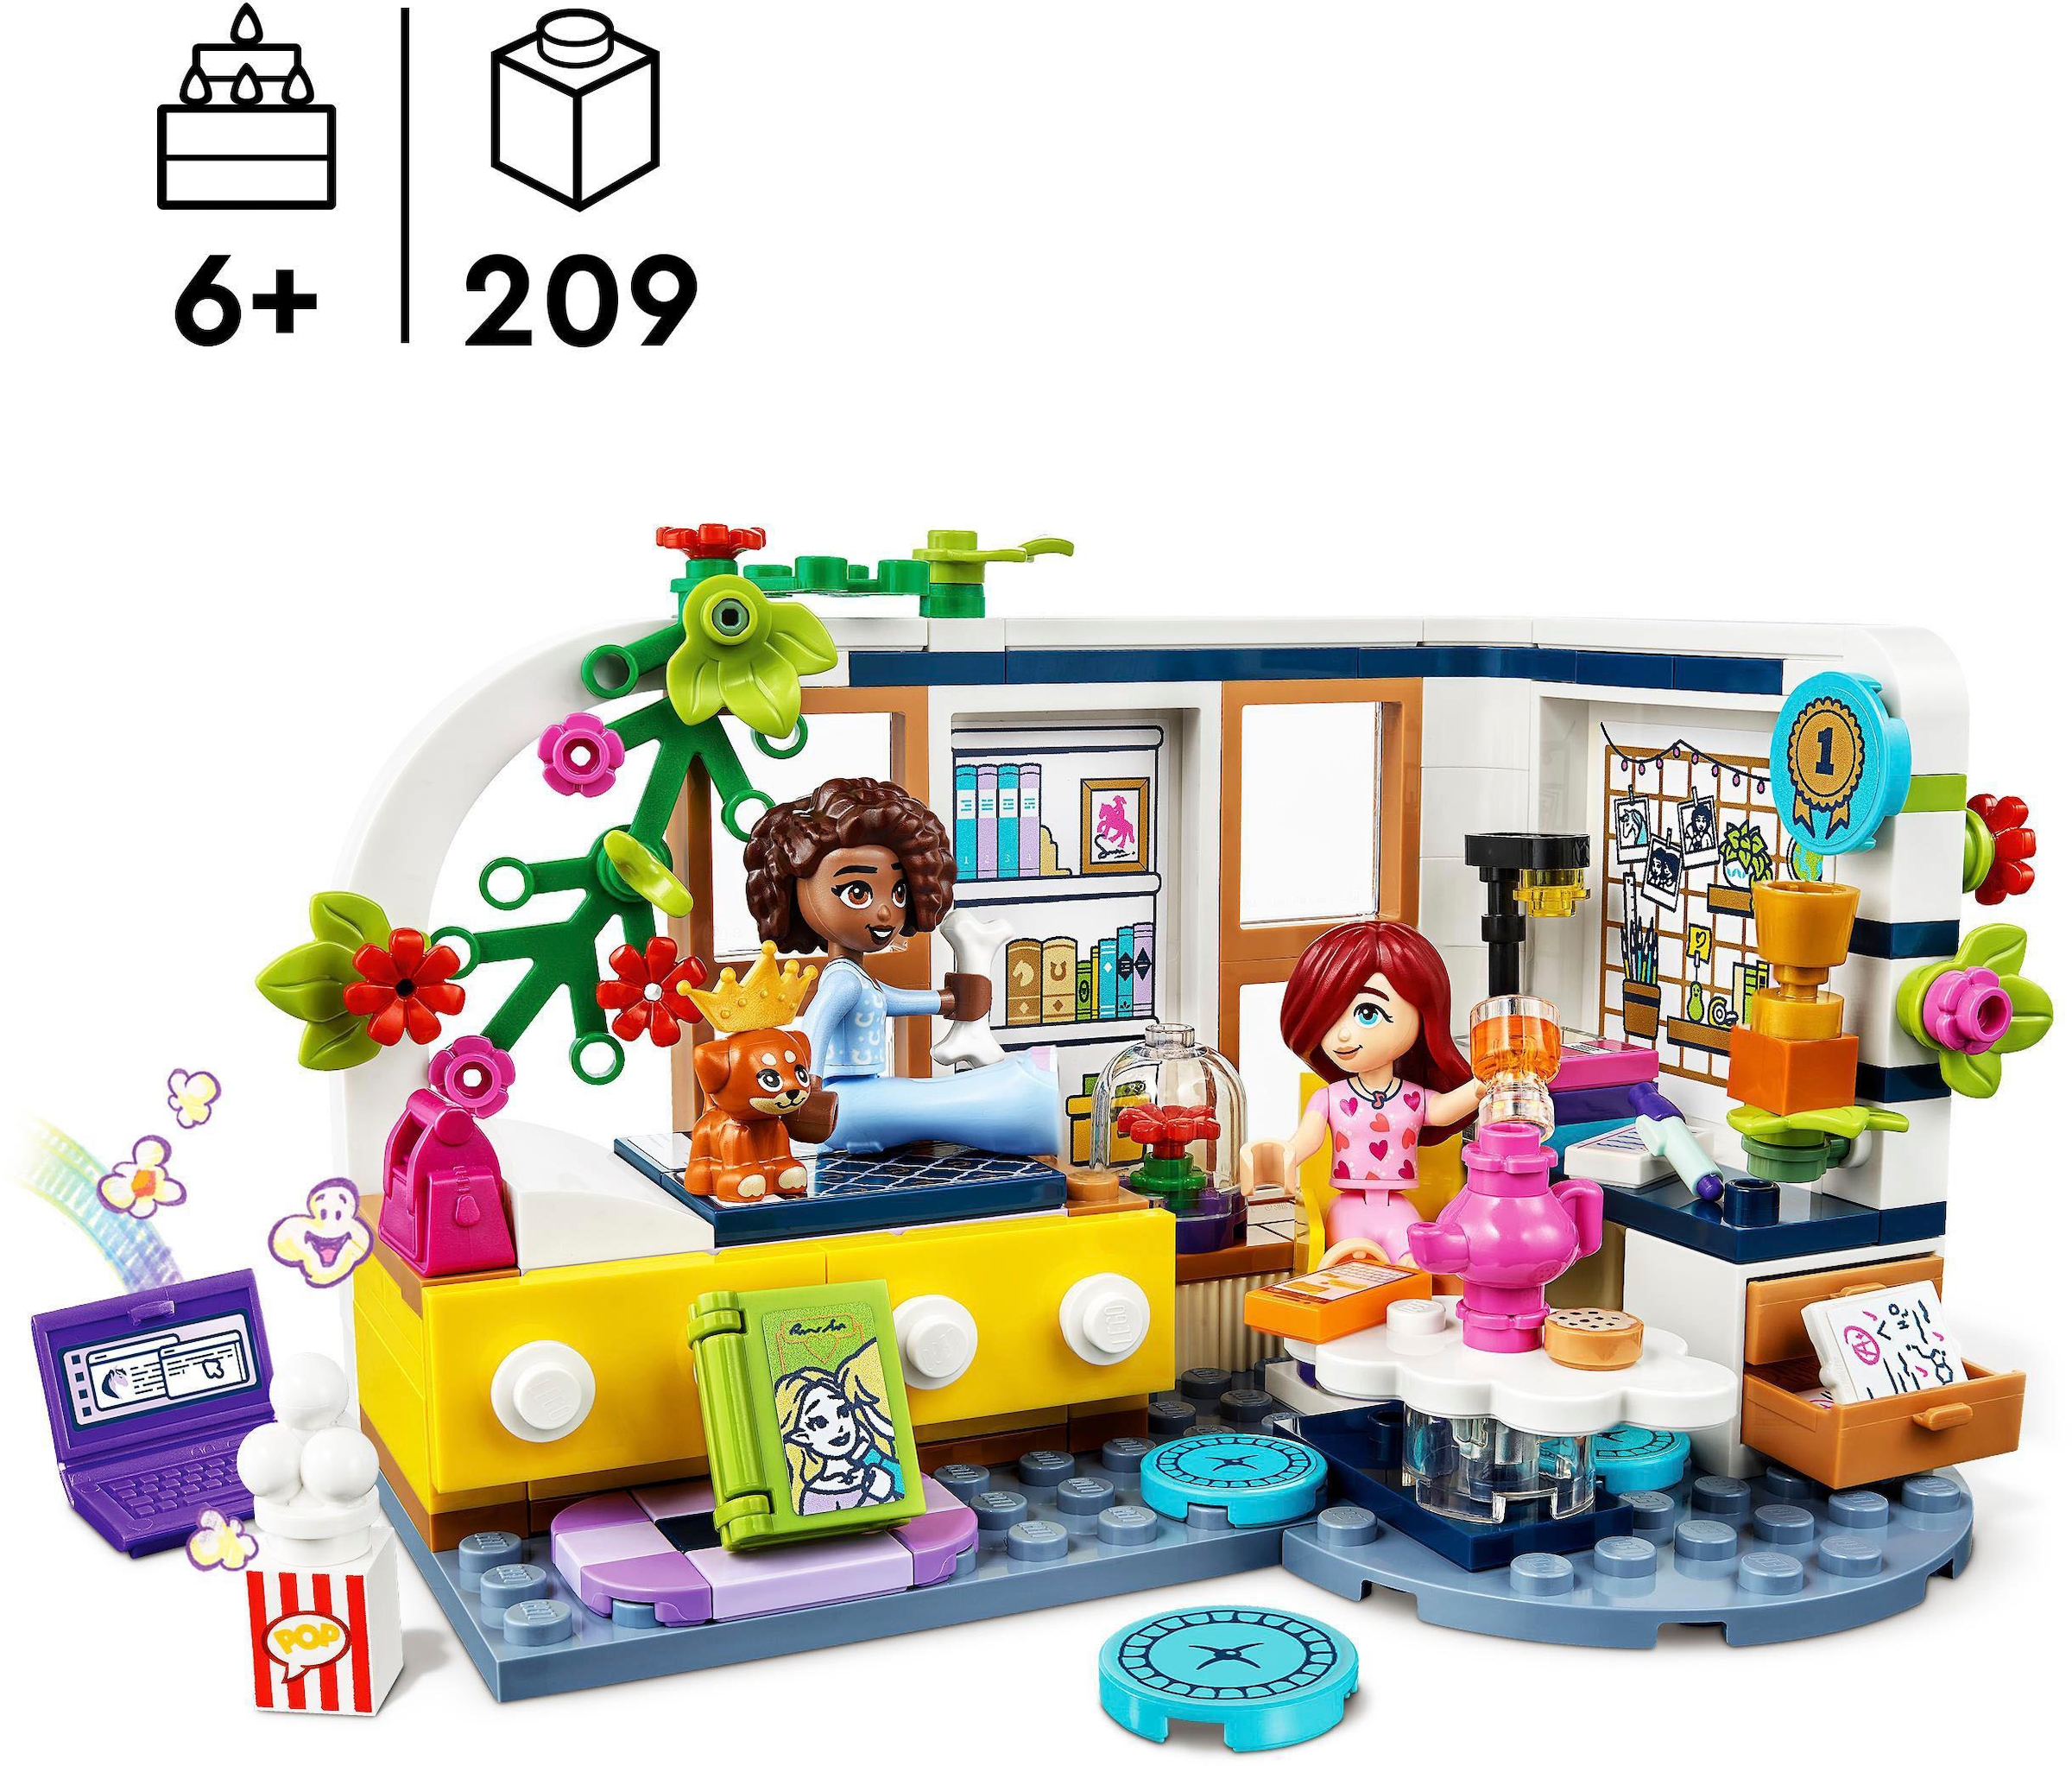 LEGO® Konstruktionsspielsteine »Aliyas Zimmer (41740), LEGO® Friends«, (209 St.), Made in Europe